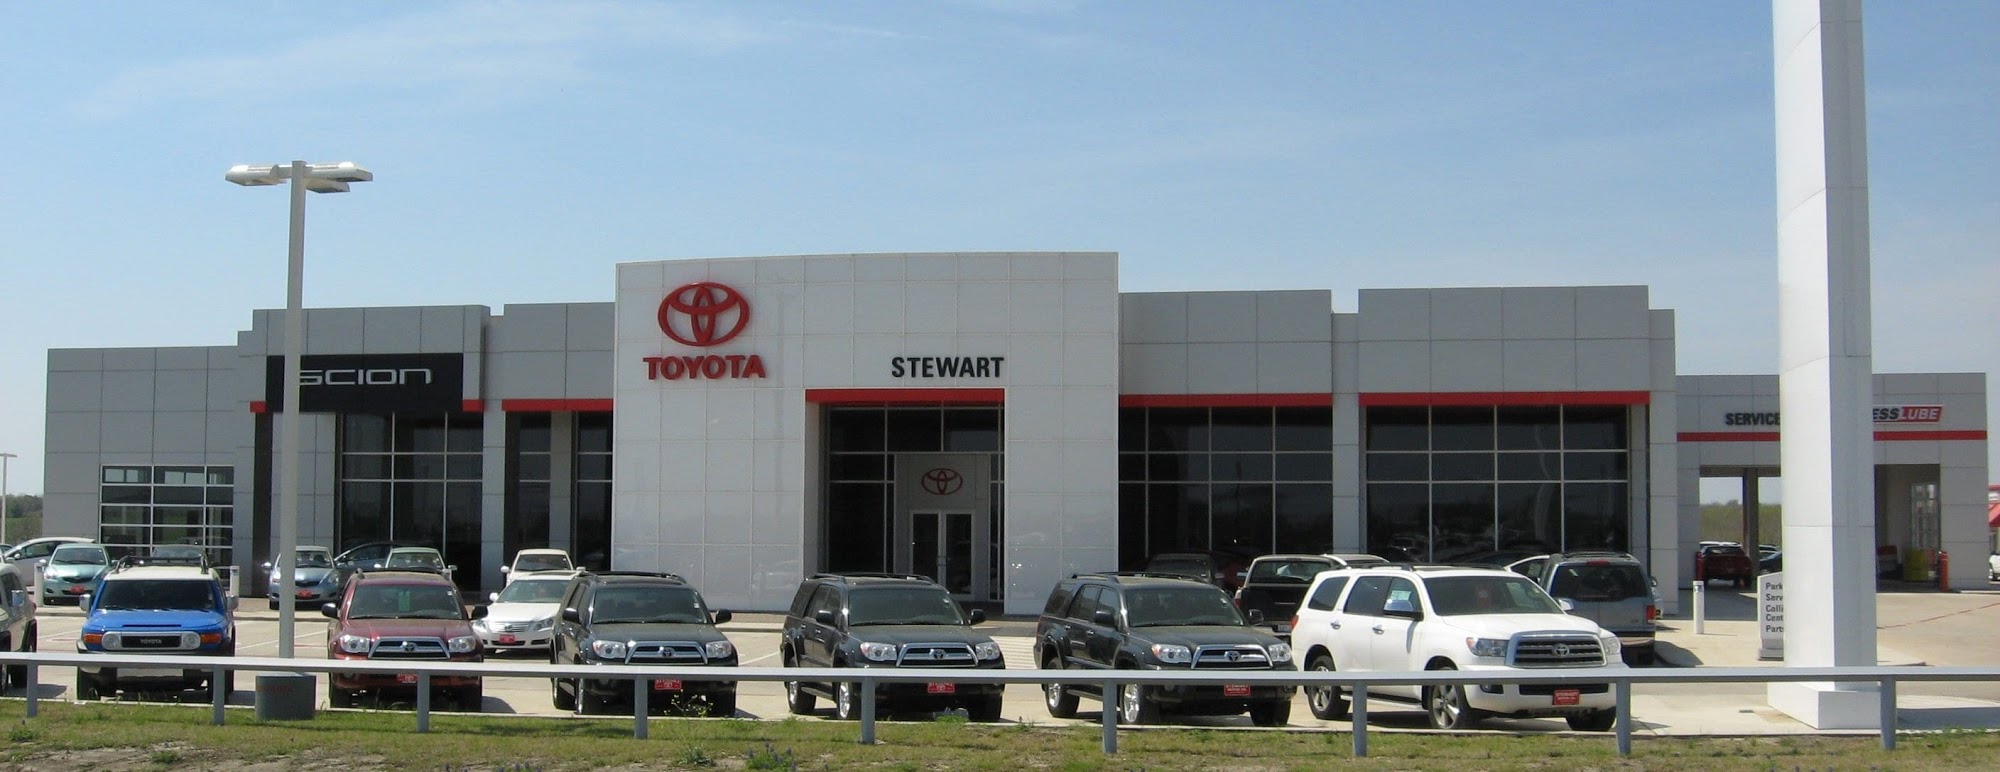 Stewart Toyota